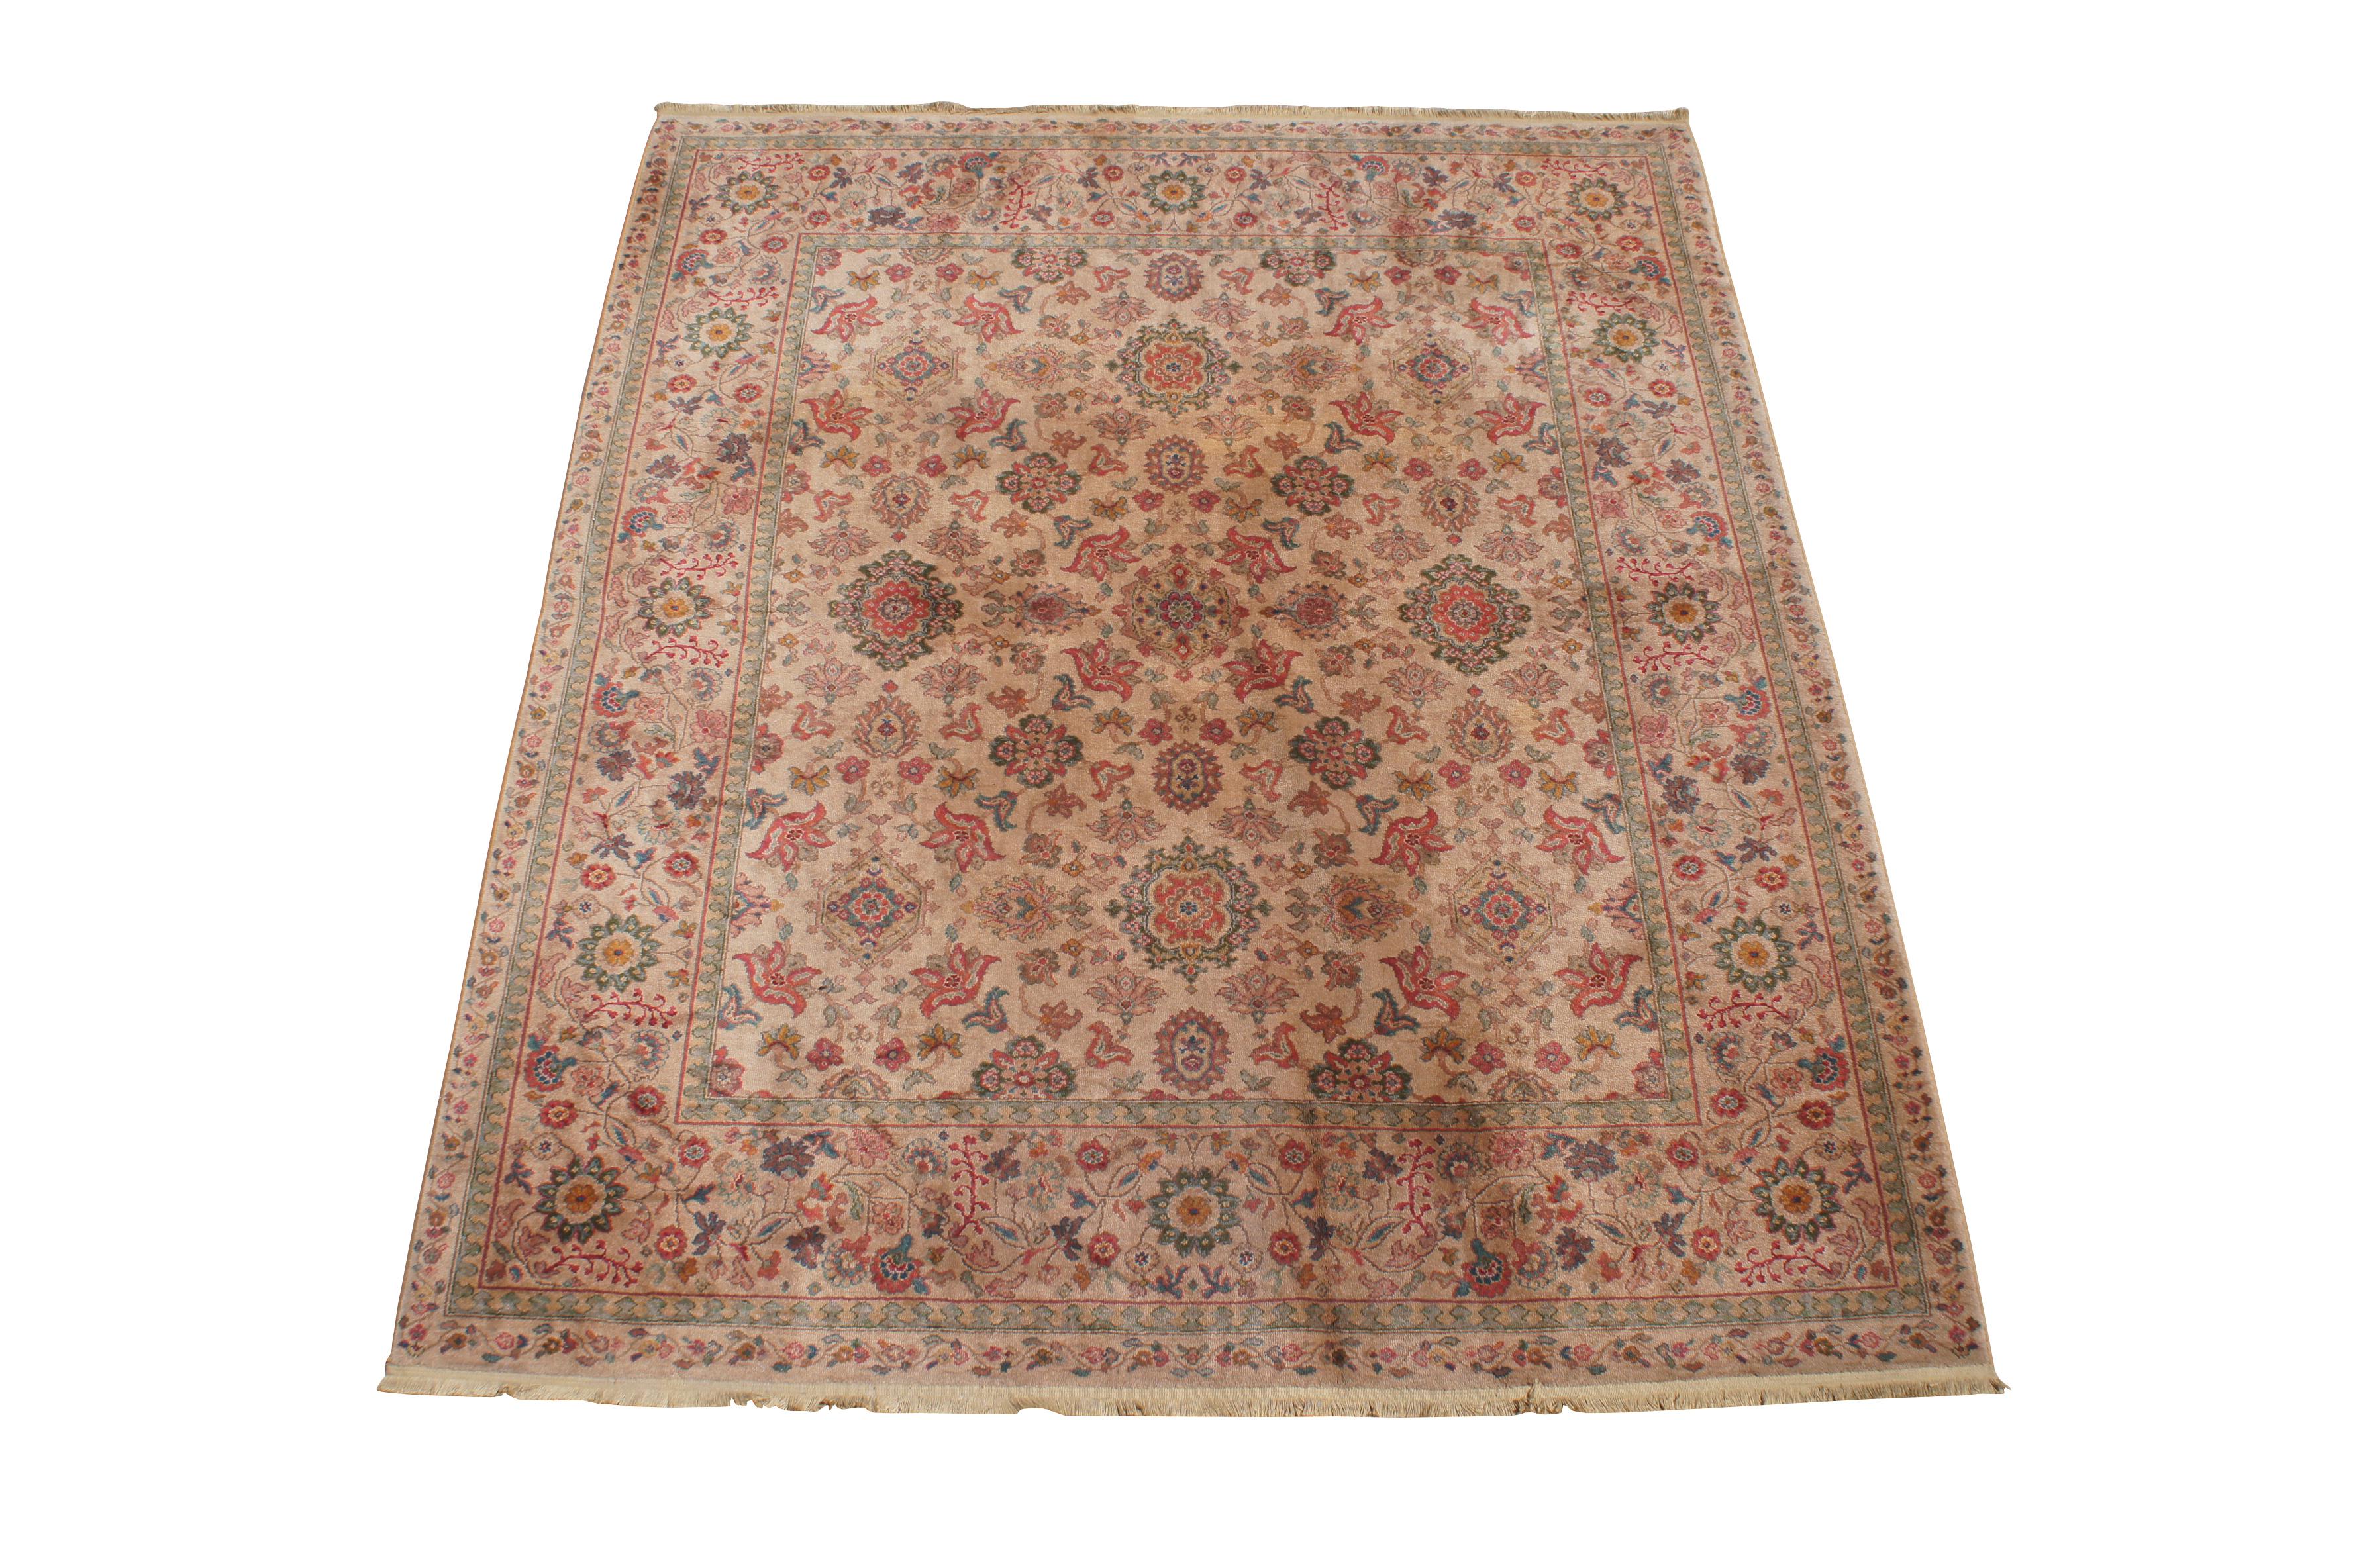 Karastan 900-906 Samovar Teawash wool carpet / Feraghan Sarouk area rug. Made in the USA, 100% full wool pile. 

8'8